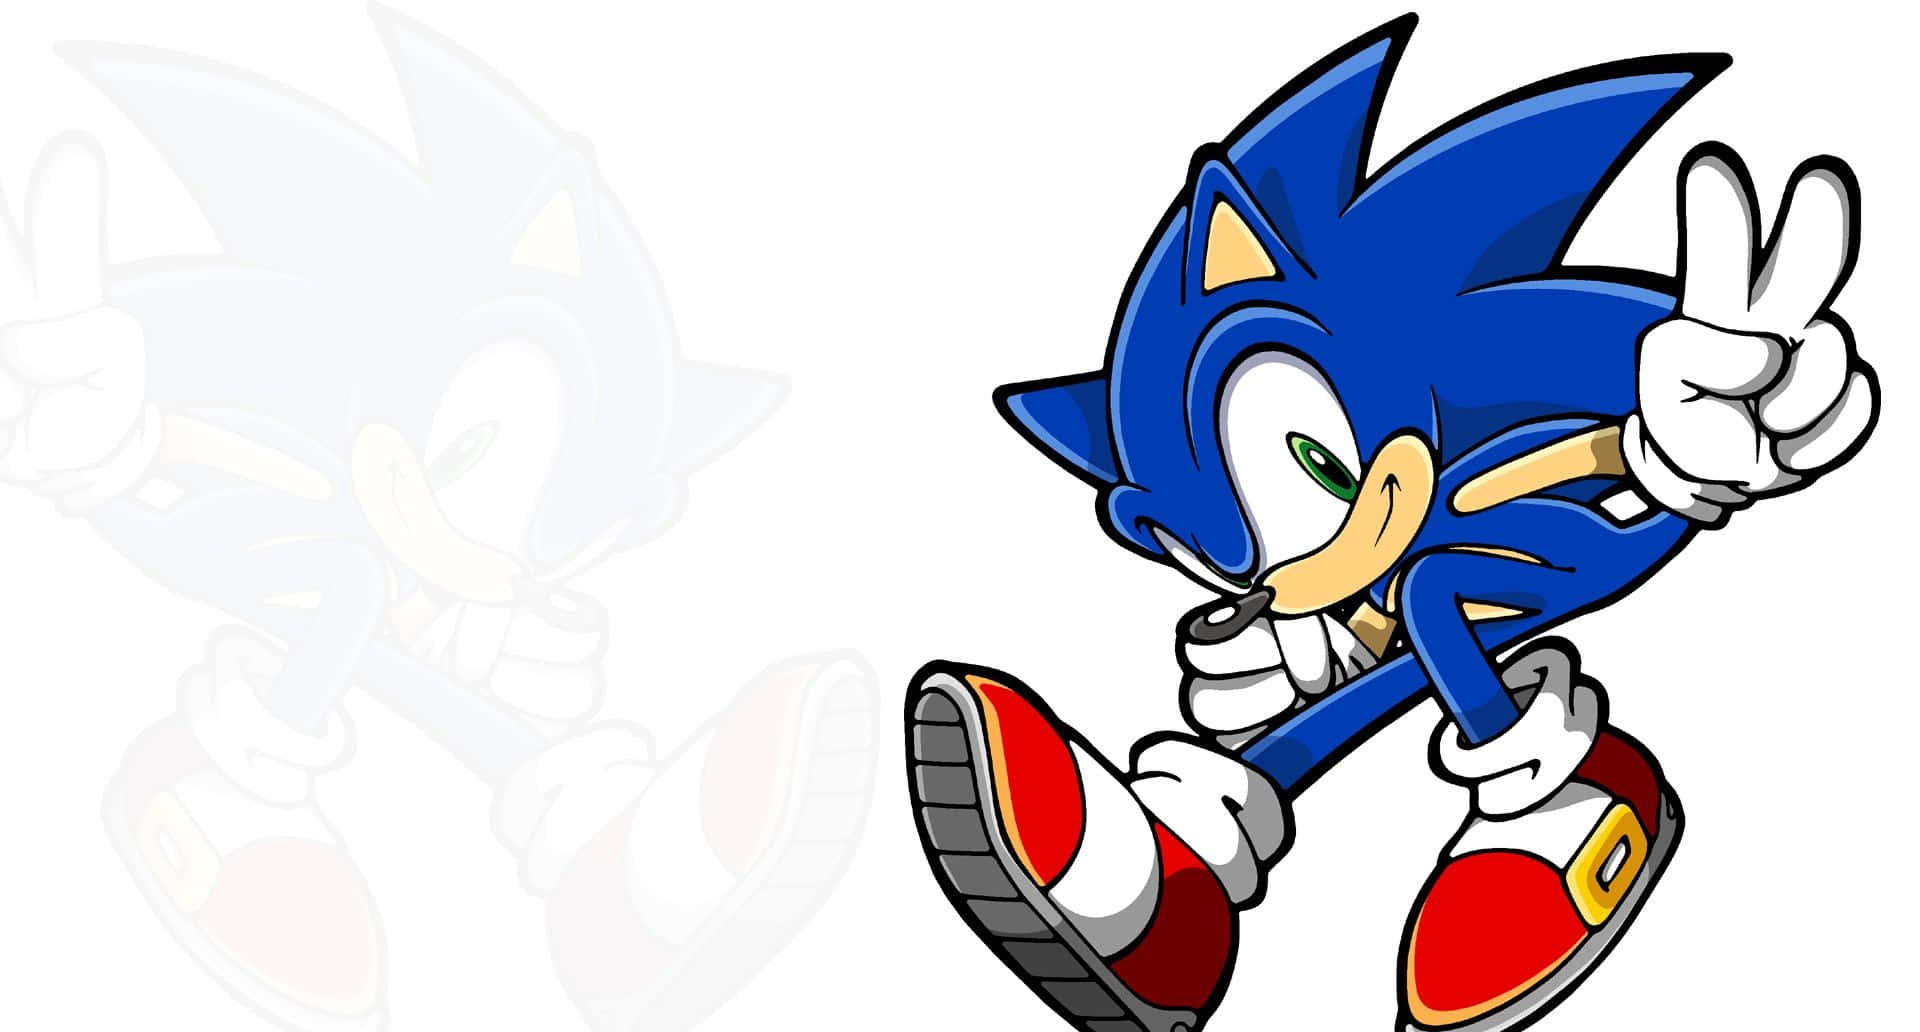 Bliv ved med Sonic the Hedgehog-verdenen i 4K-opløsning baggrund. Wallpaper